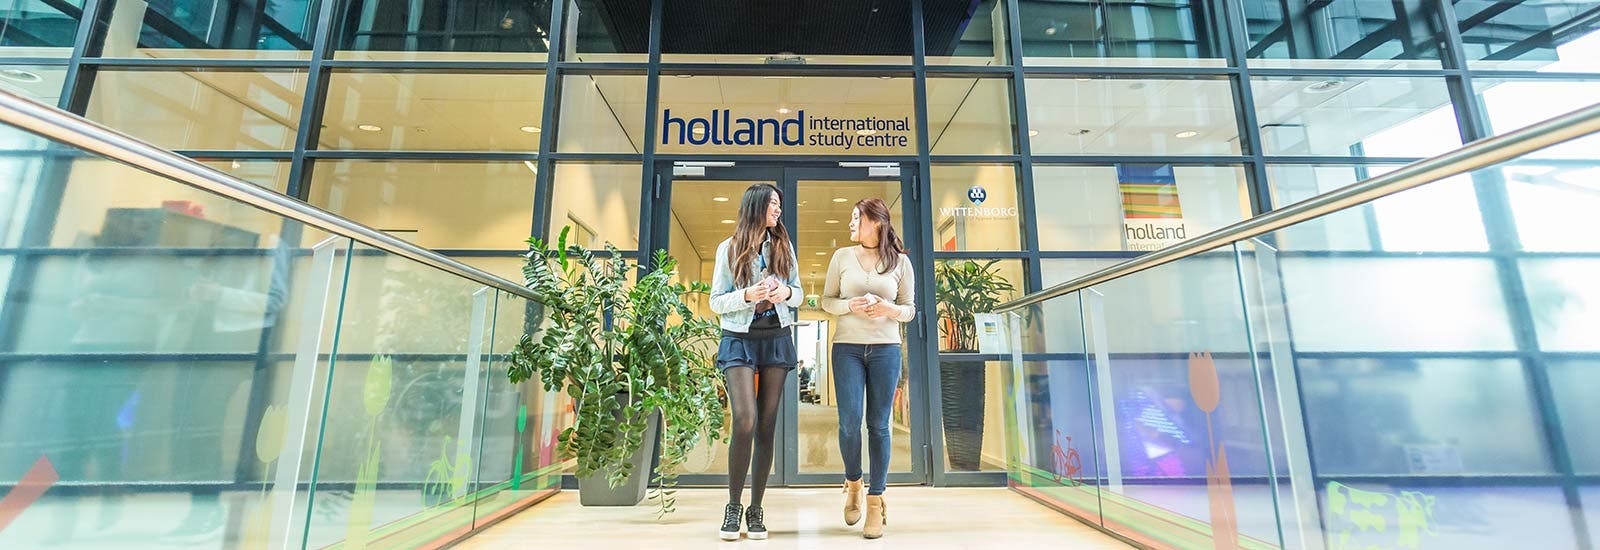 学生们走出荷兰国际学习中心